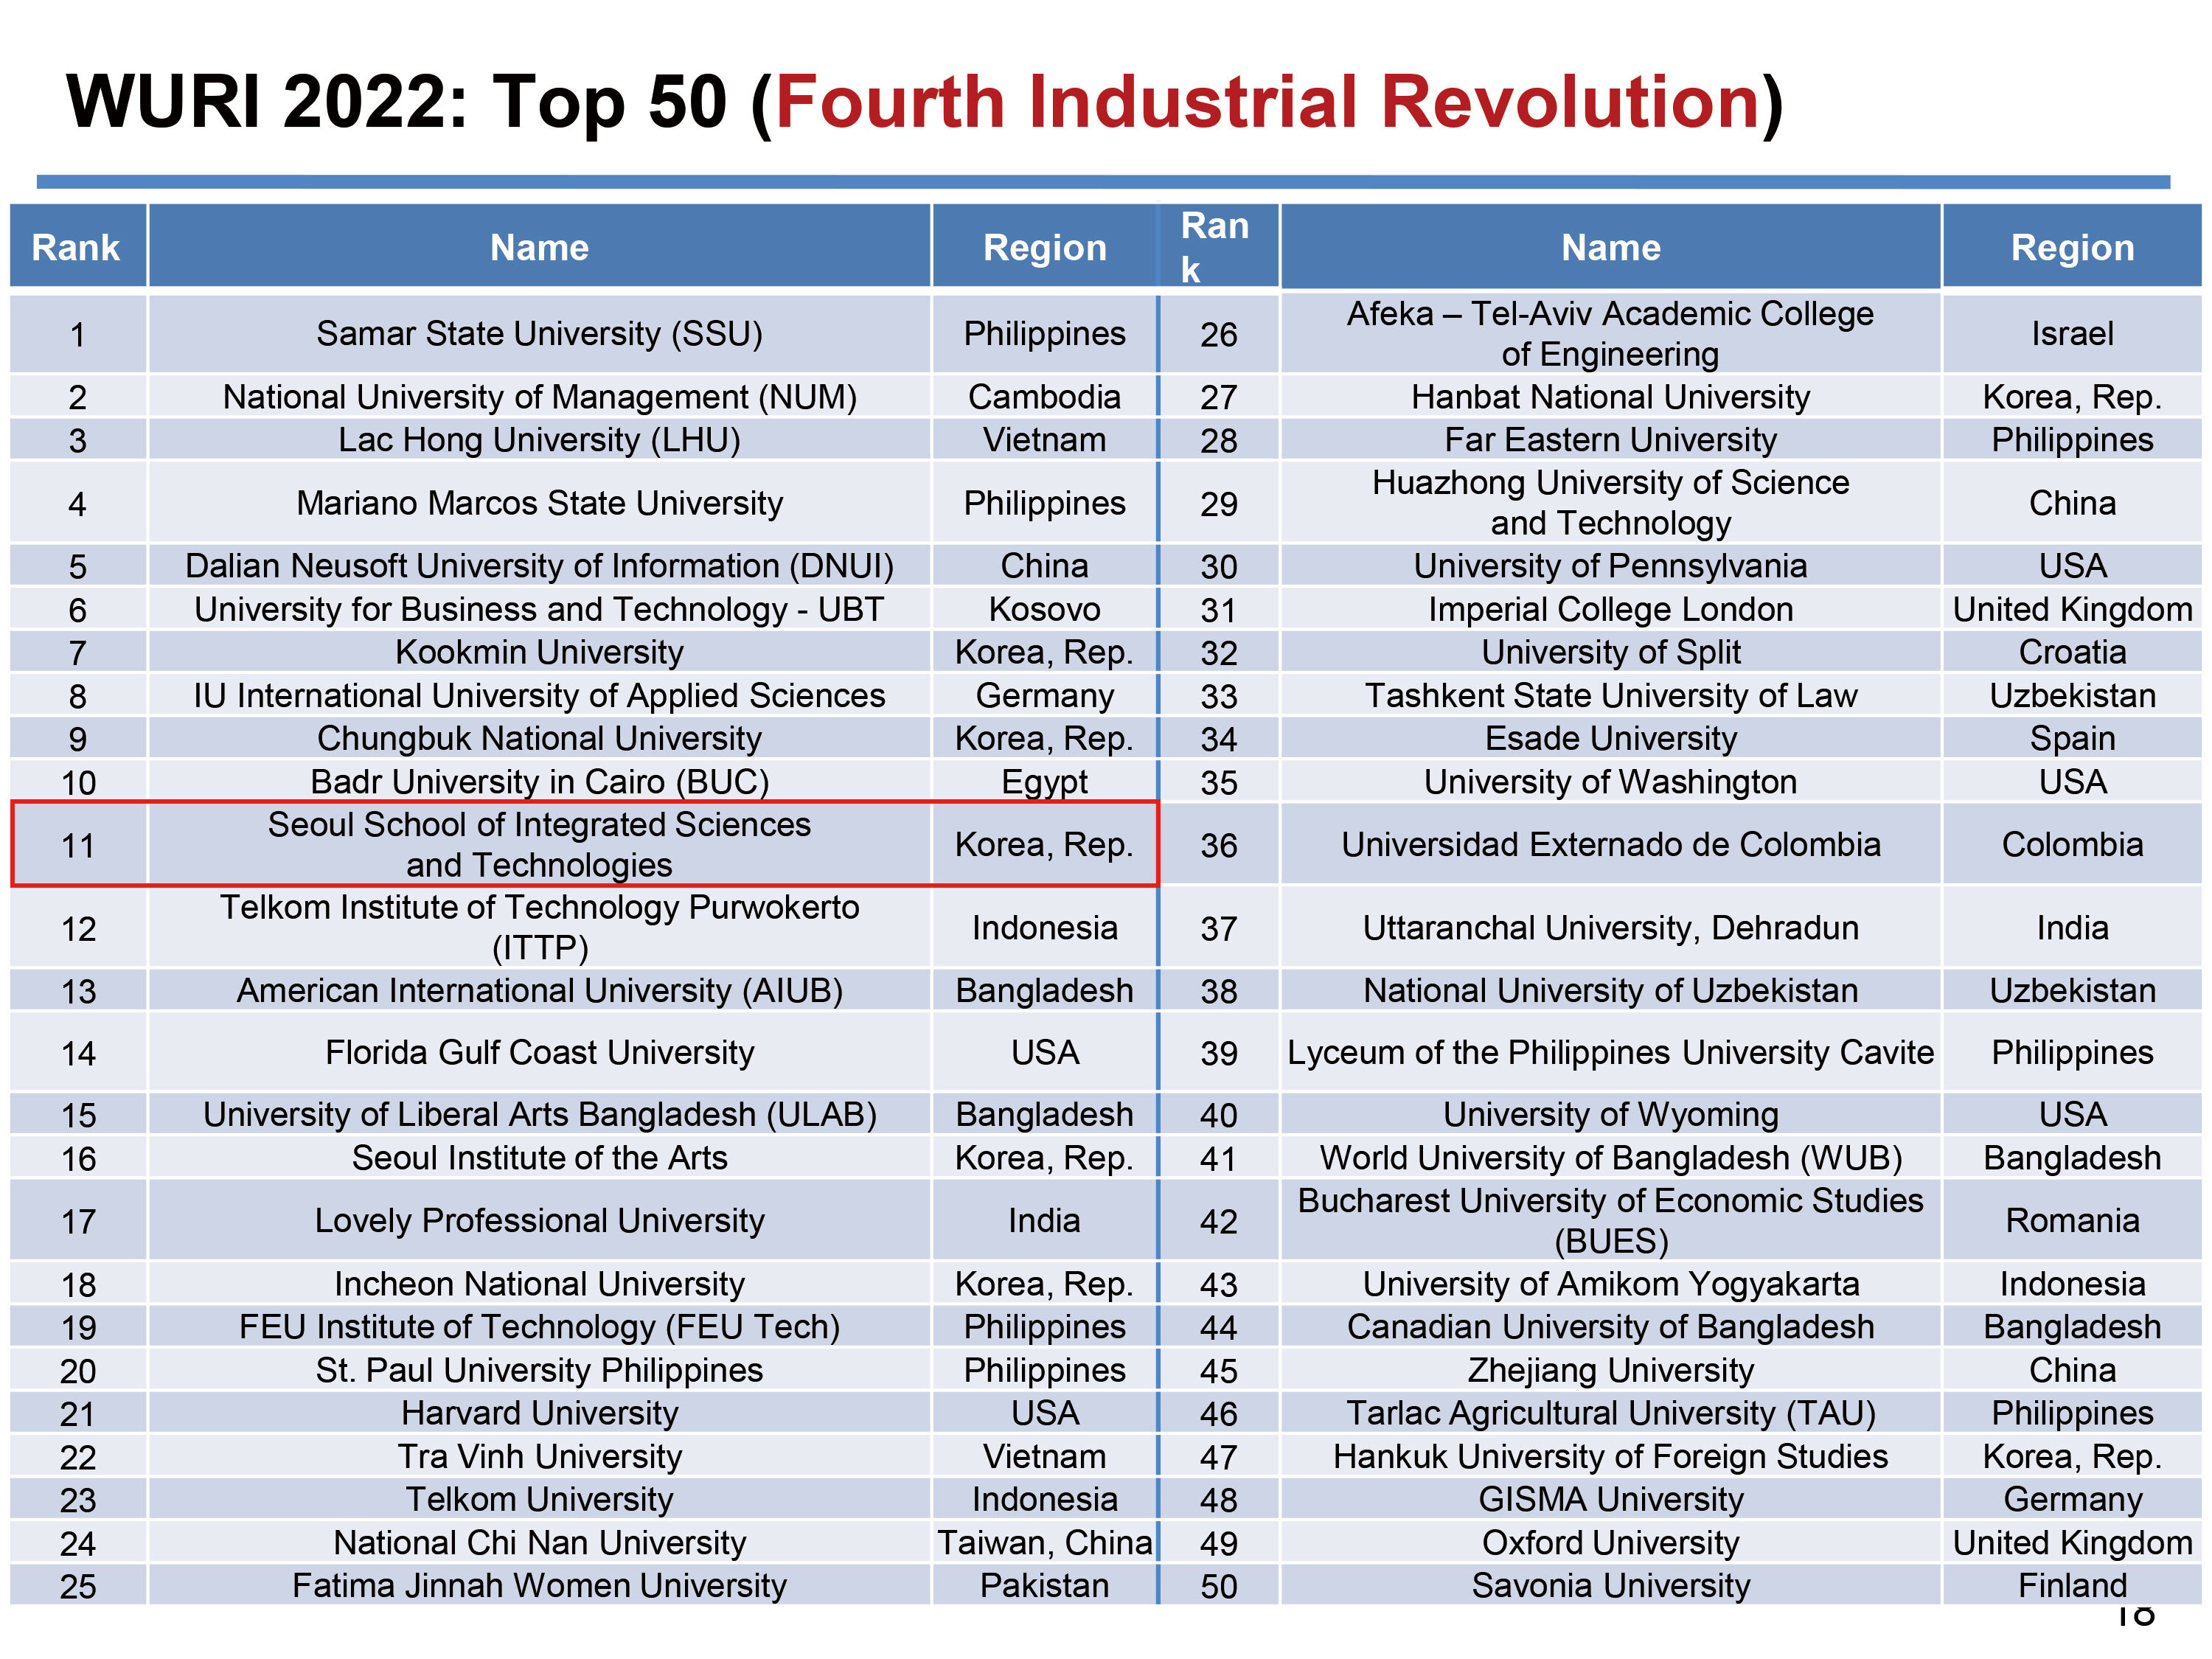 韩国首尔科大在Fourth Industrial Revolution（第四次工业革命）标准中排名第11位